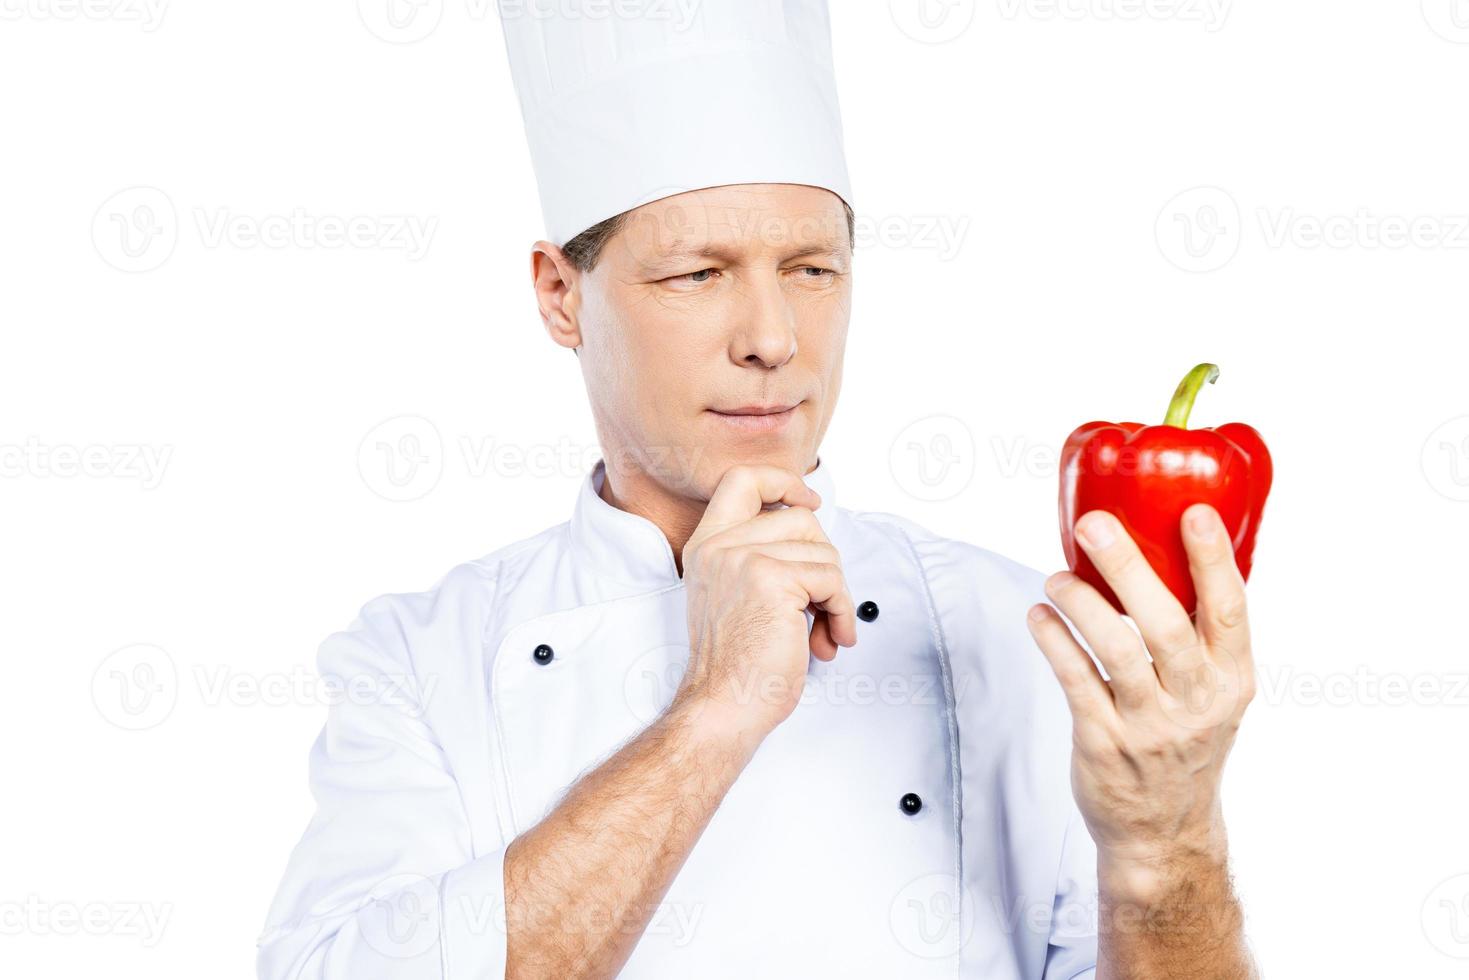 escolhendo os melhores vegetais para sua refeição. alegre chef maduro em uniforme branco segurando pimenta vermelha e olhando para ele em pé contra um fundo branco foto